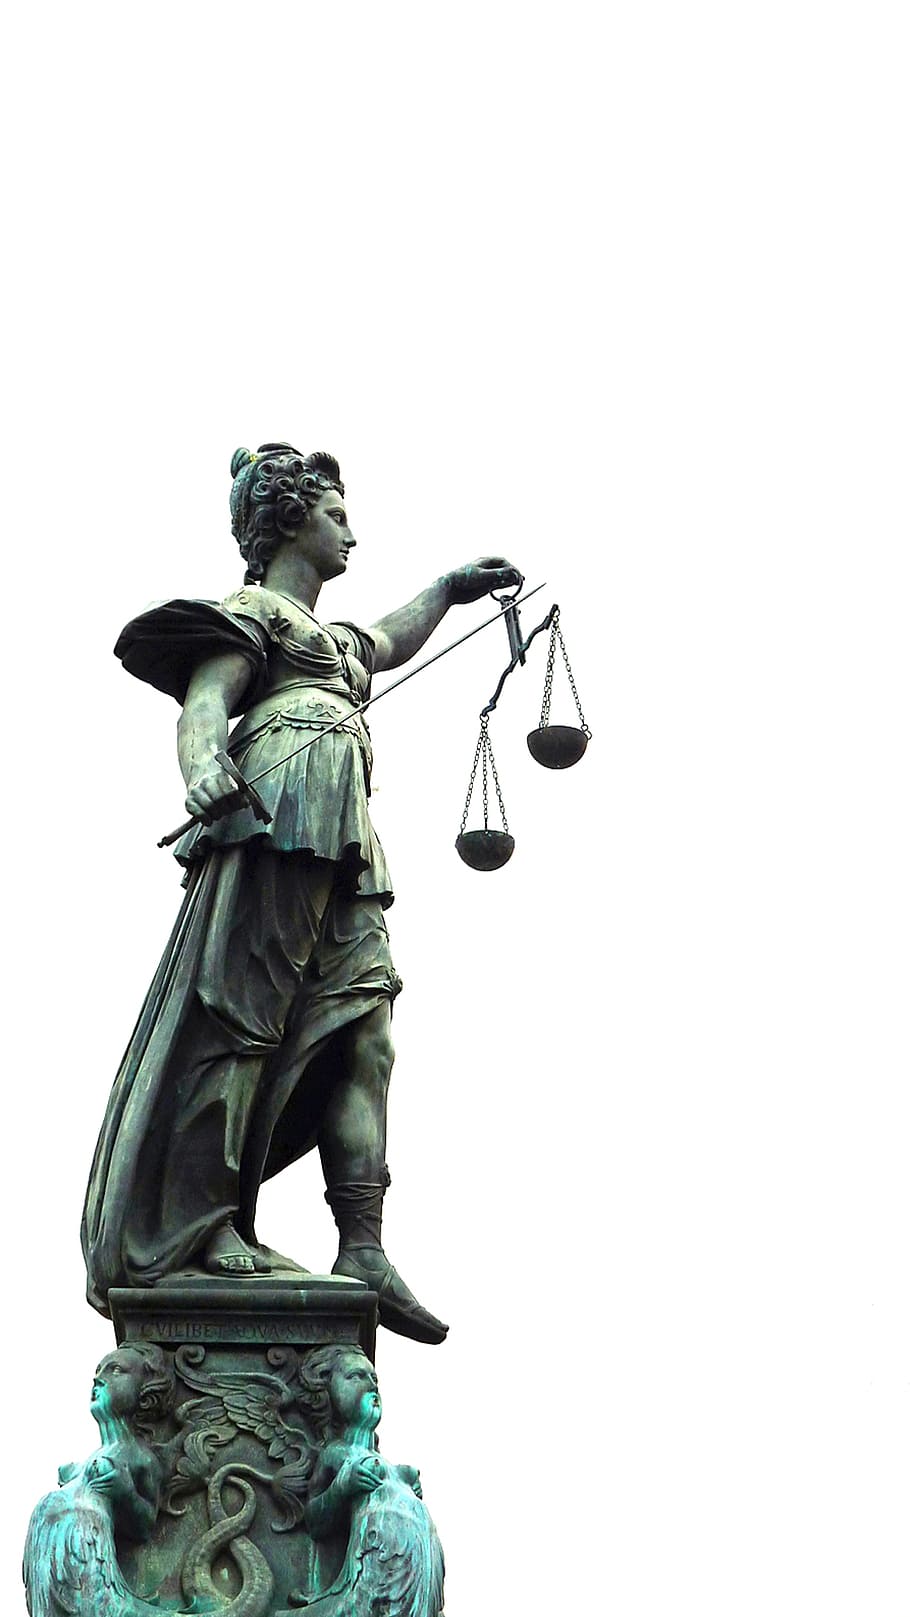 manusia, memegang, patung skala, jelas, langit, Justitia, Kanan, Keadilan, Kasus, Hukum Kasus